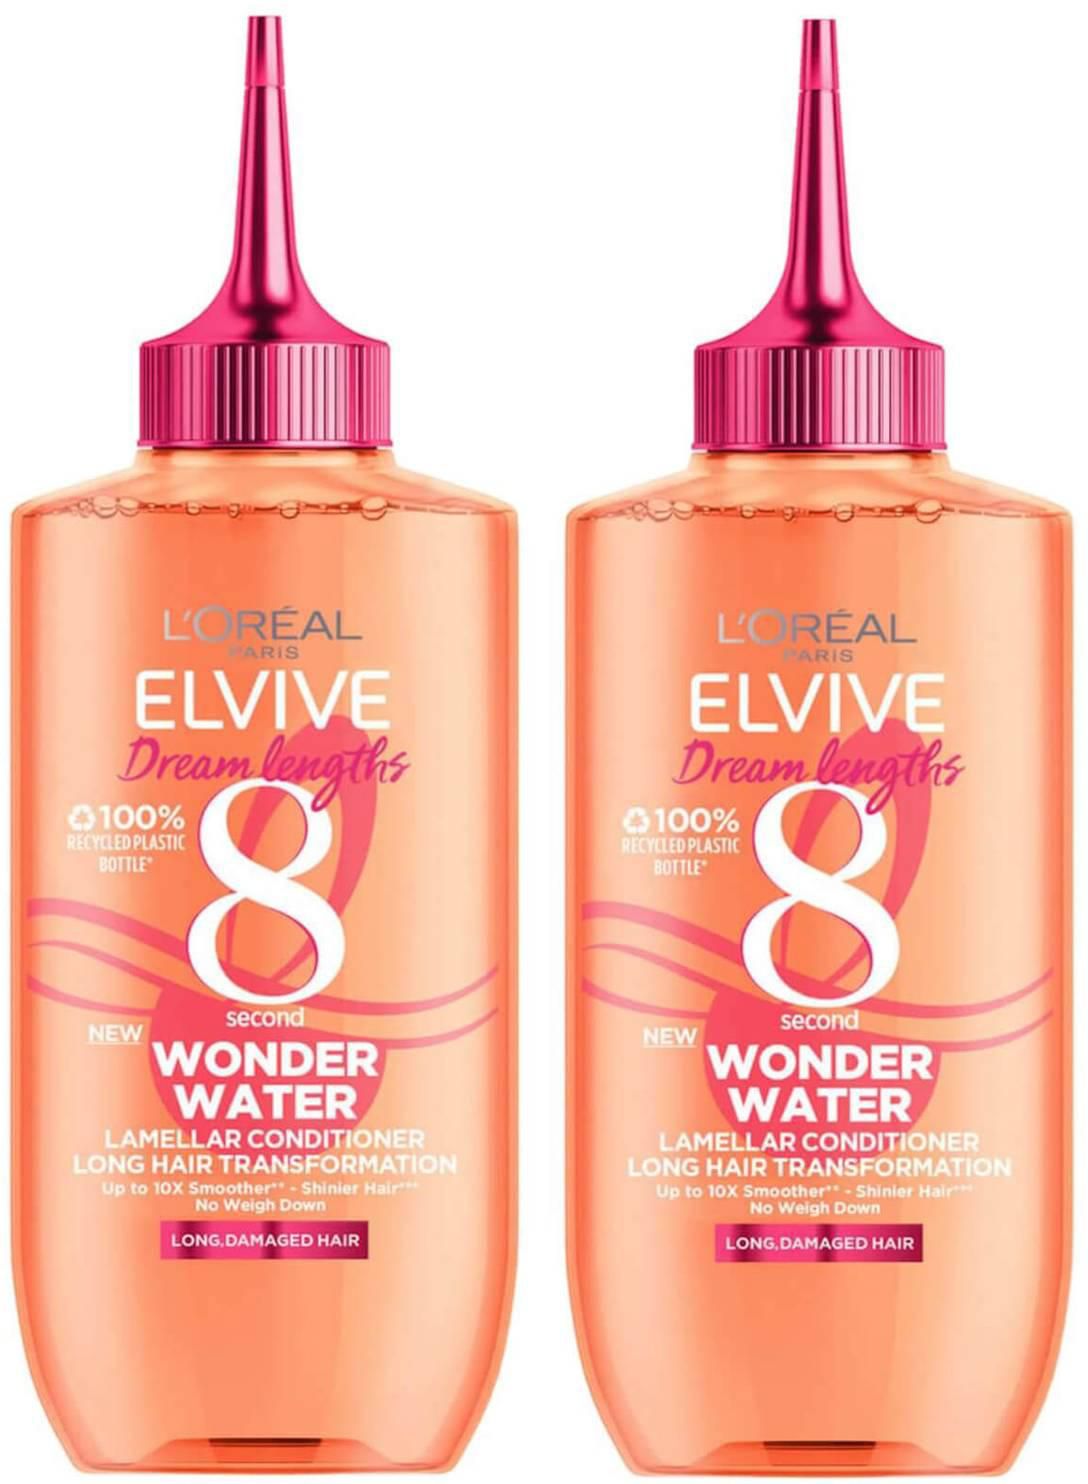 L'Oréal Paris Elvive Dream Lengths Wonder Water 8 Second Hair Treatment 200ml Duo